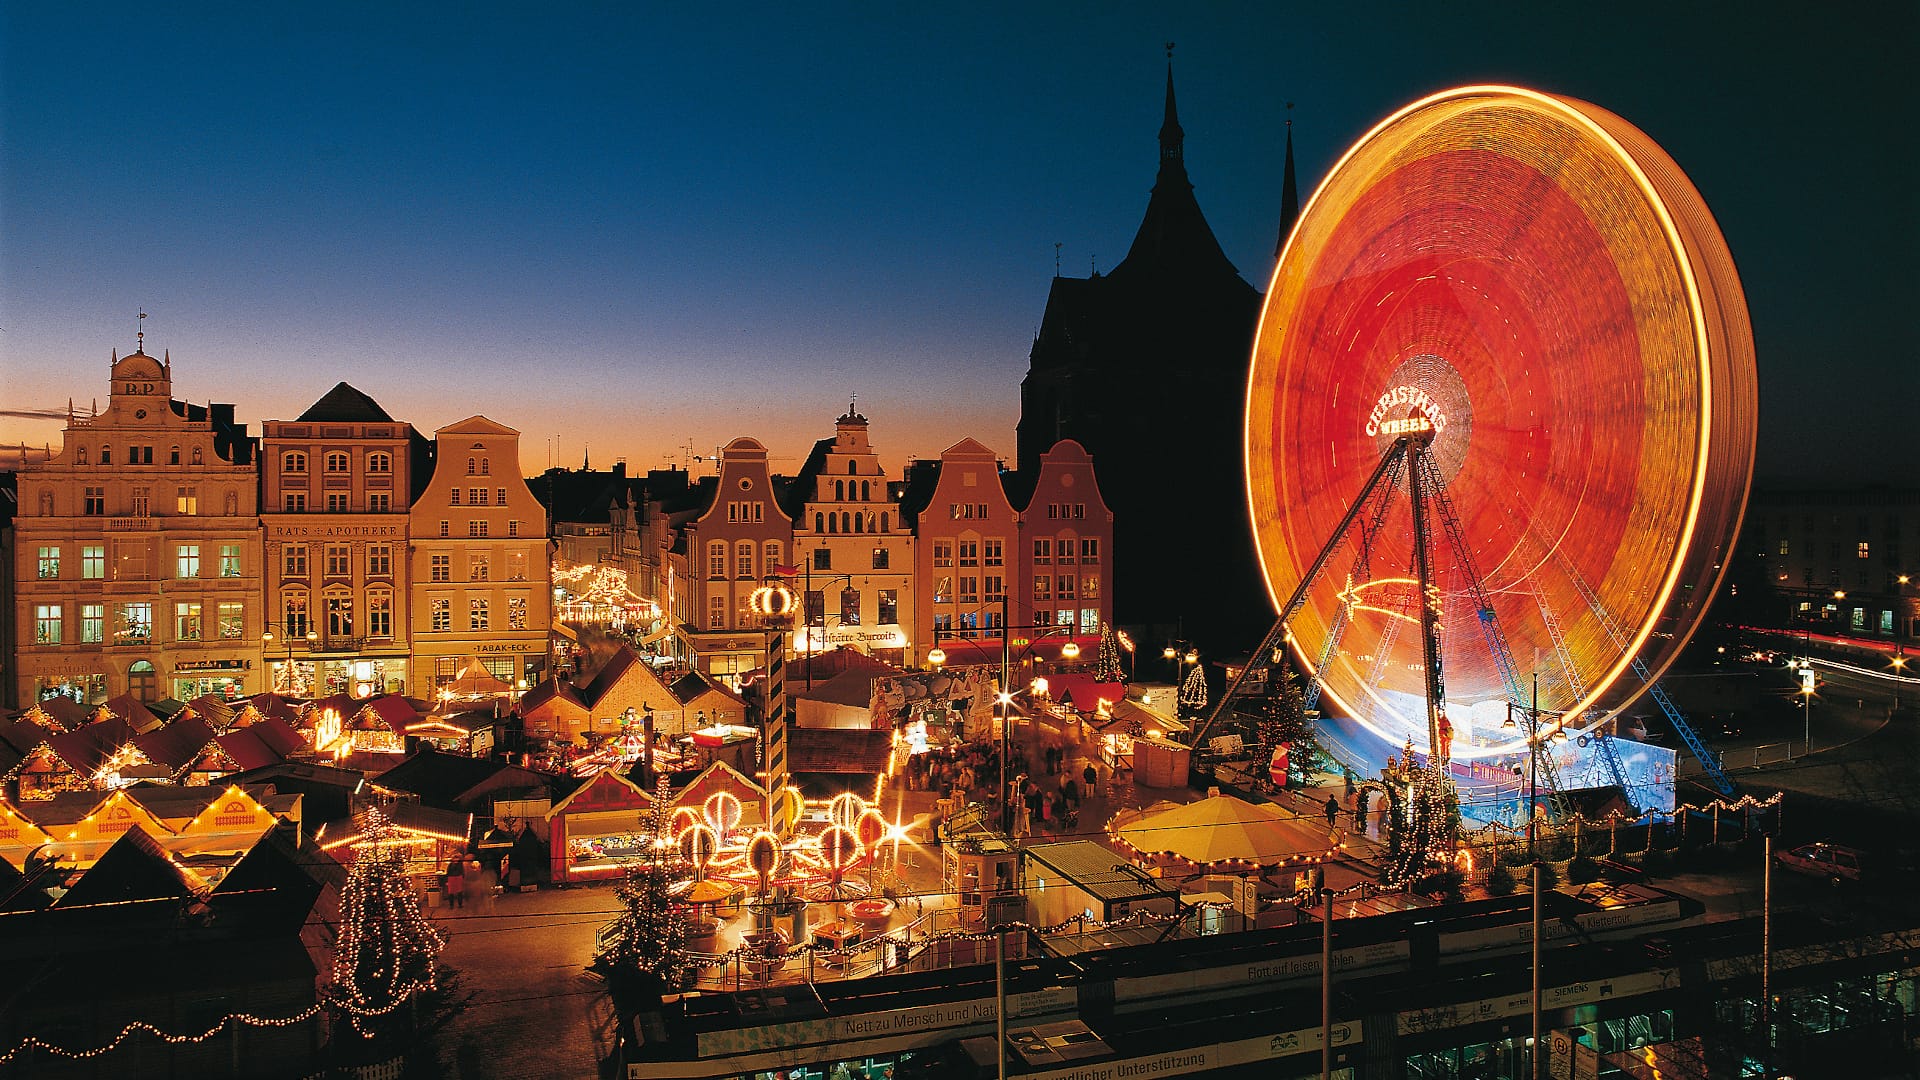 Der größte Weihnachtsmarkt in Mecklenburg-Vorpommern vom 25. November bis 22. Dezember 2019 in der Hansestadt Rostock.